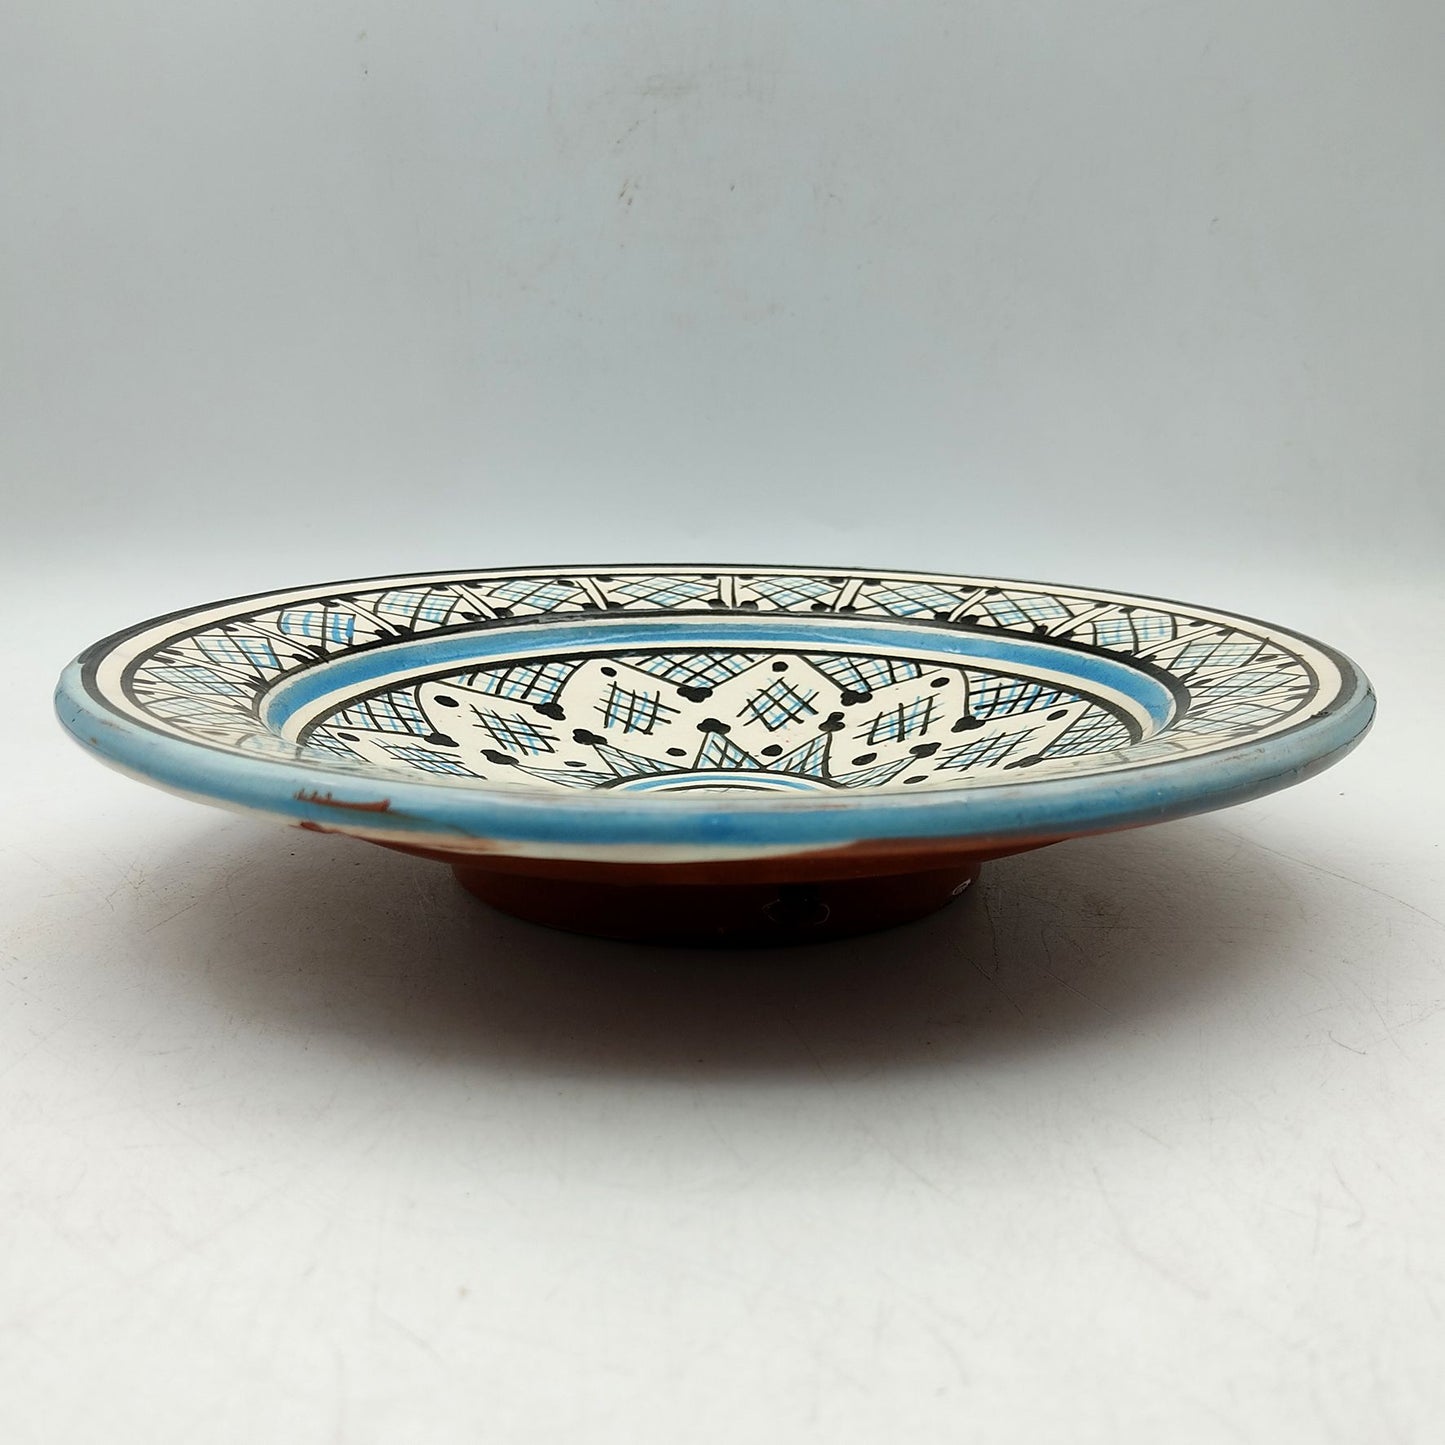 Piatto Ceramica Terracotta Parete Diam.23cm Etnico Marocchino Marocco 0401221142